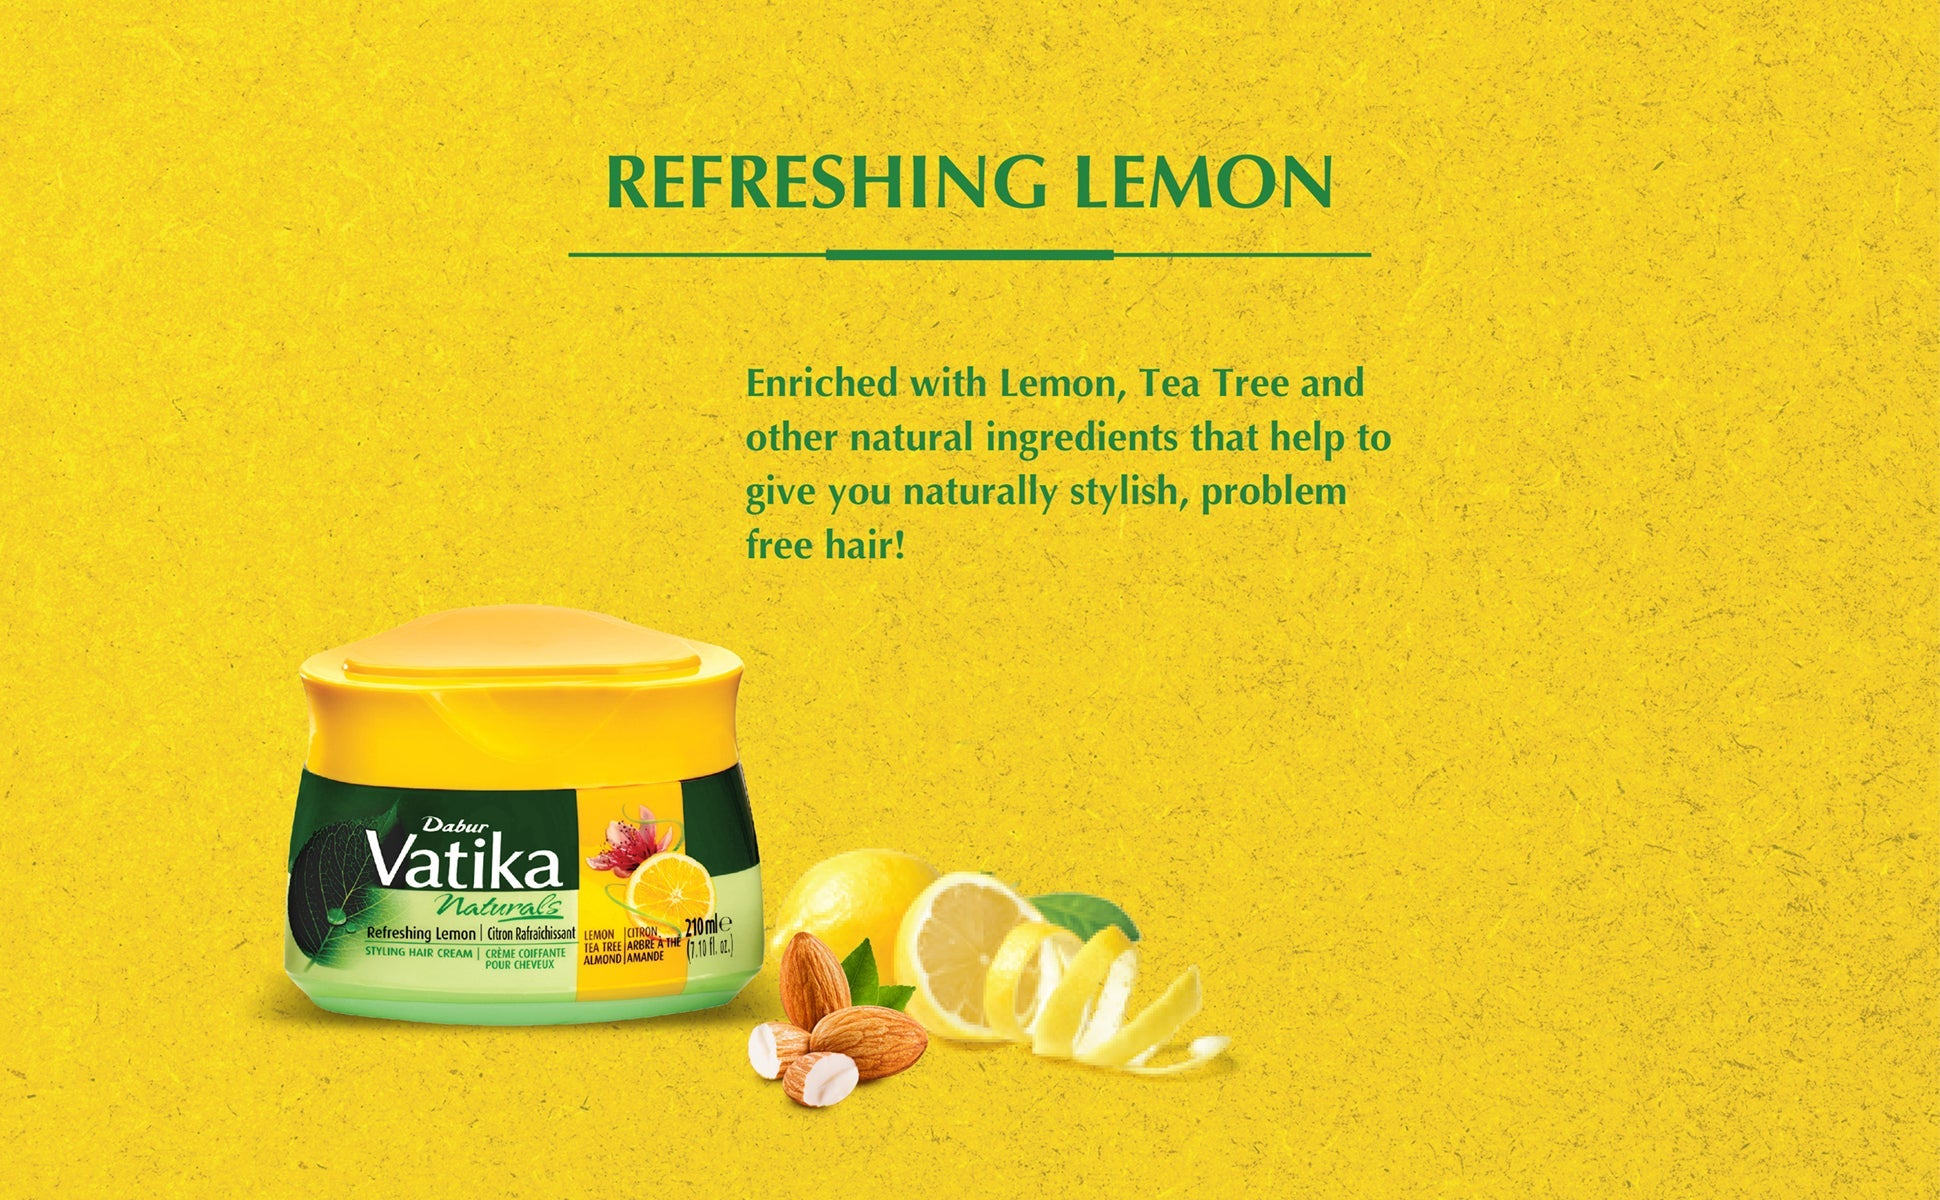 Vatika Naturals Refreshing Lemon Styling Hair cream.